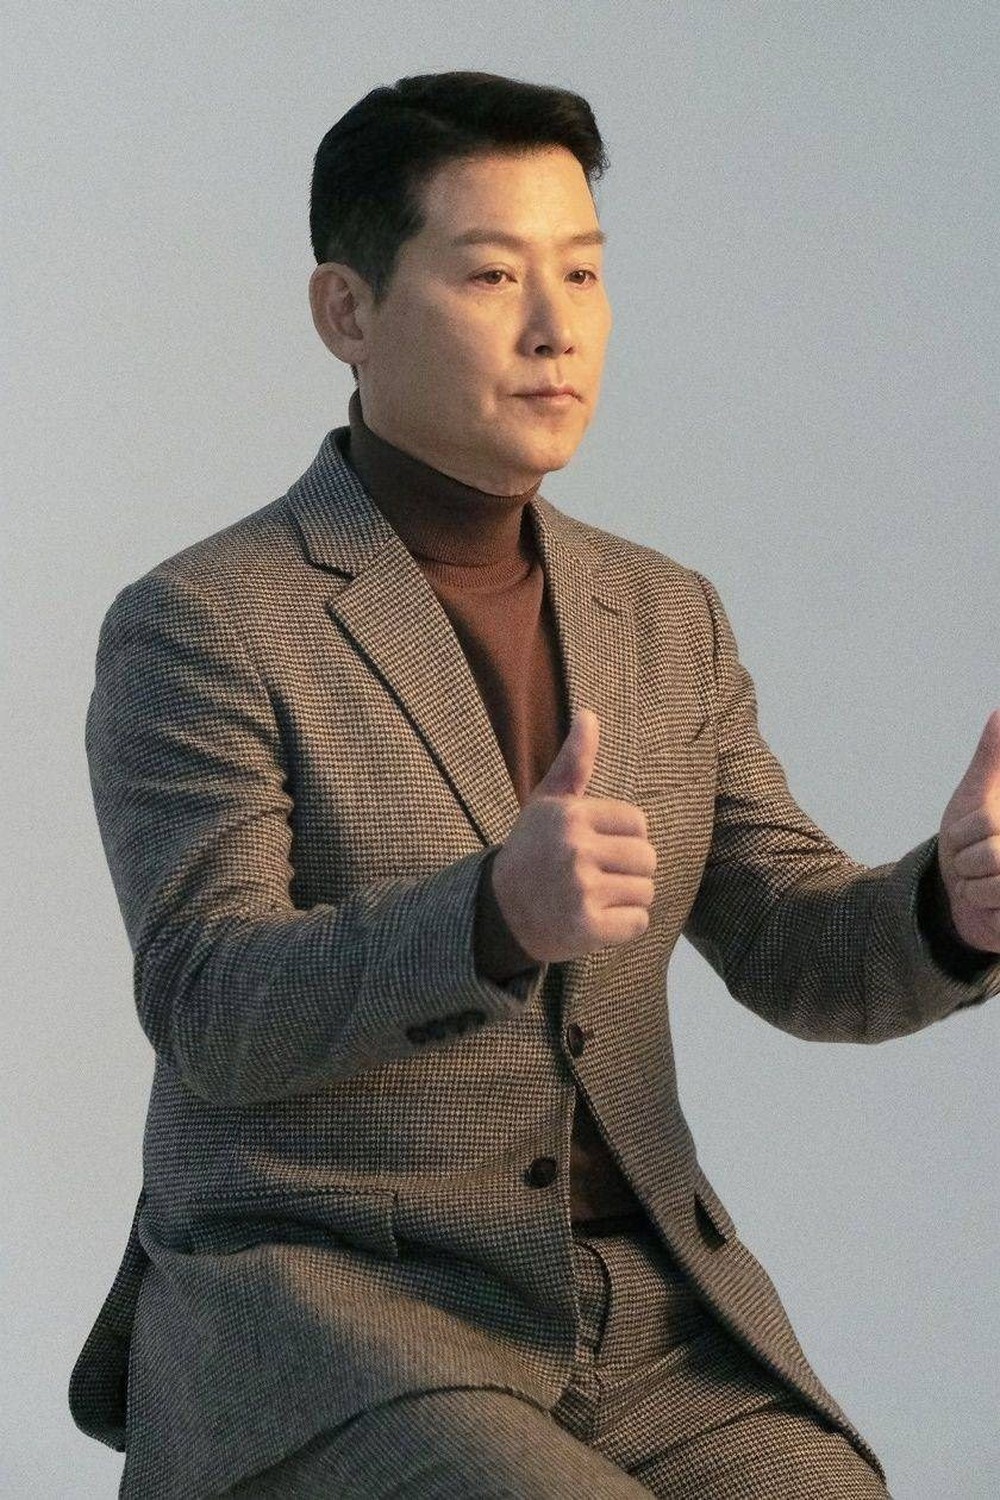 Nam diễn viên vào tù ra tội nhiều nhất Hàn Quốc - Ảnh 2.